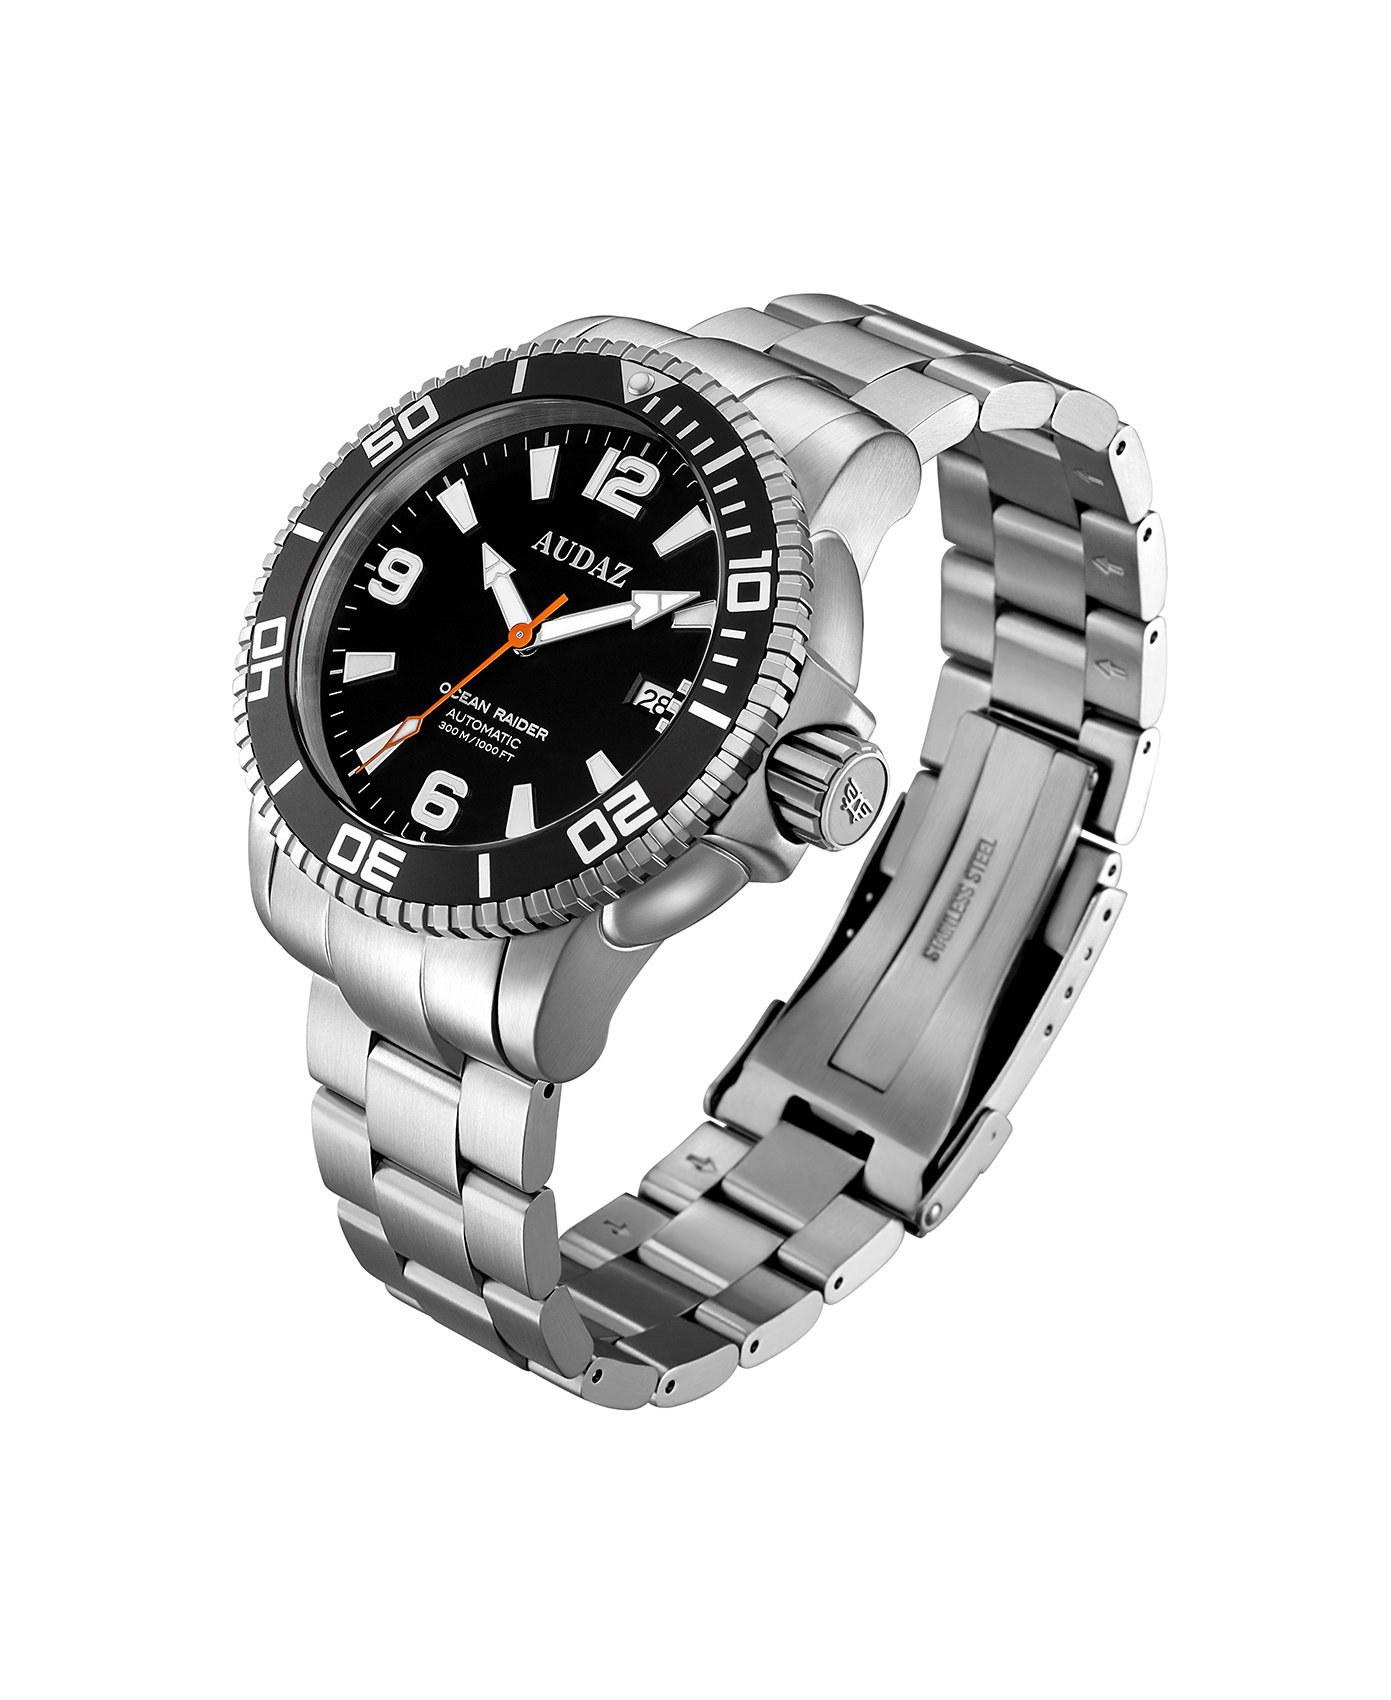 Audaz Ocean Raider Black Dial Men's Diver Automatic Watch 45mm ADZ-2060-01